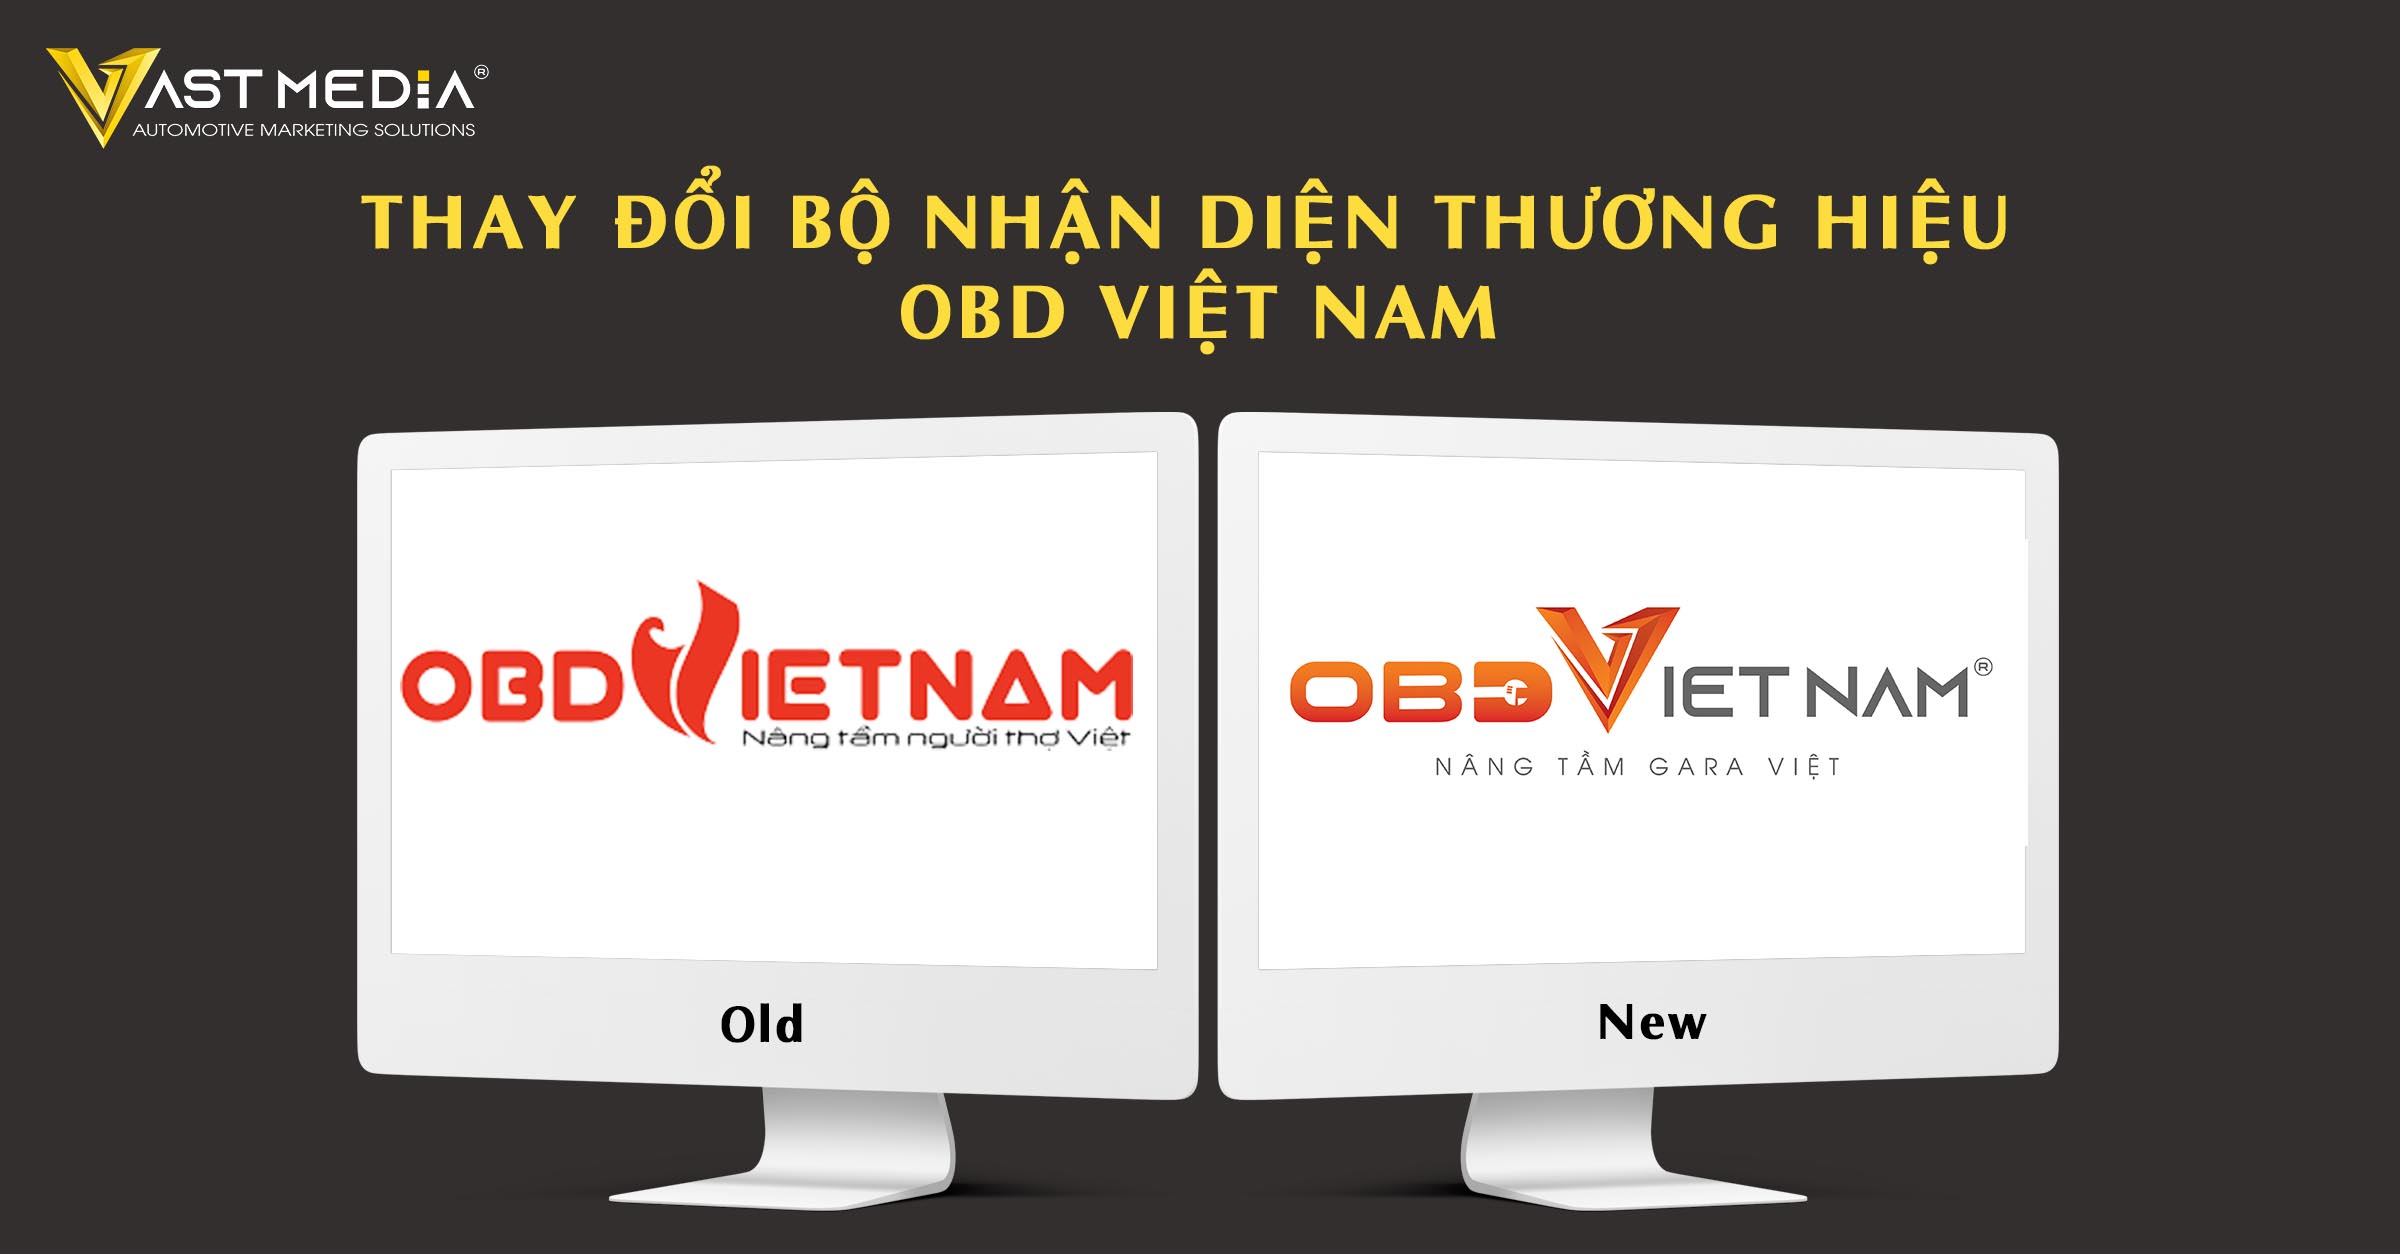 Vast Media thay đổi bộ nhận diện thương hiệu OBD Việt Nam